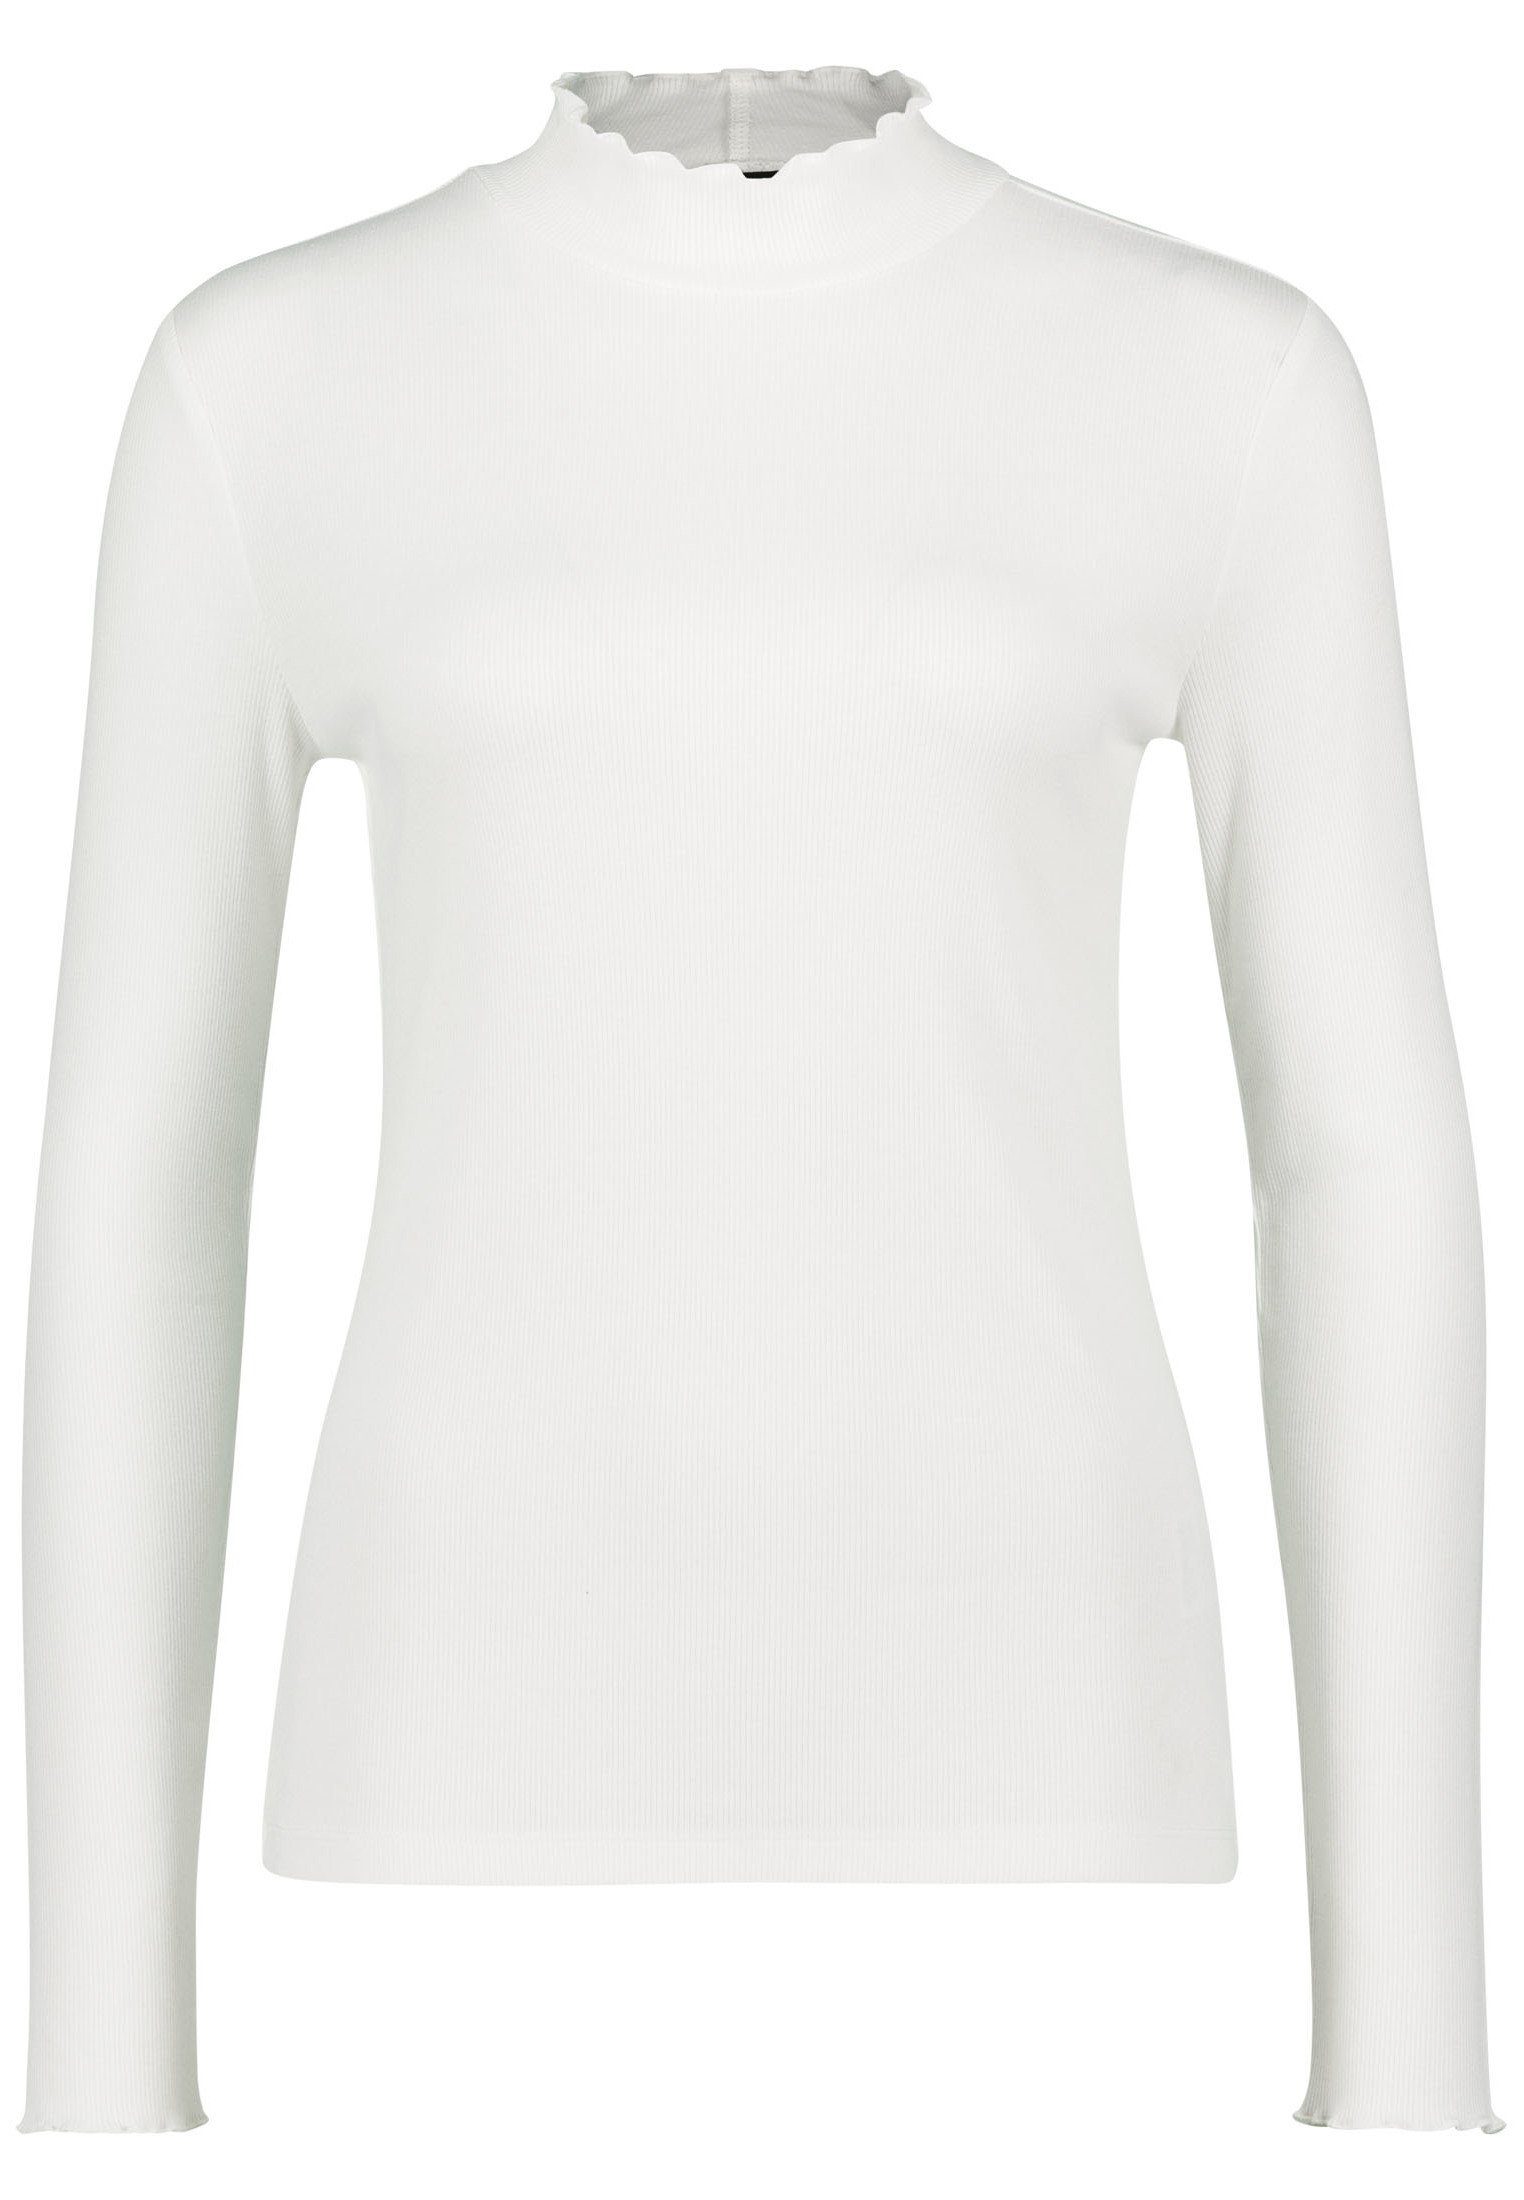 Zero Plain/ohne (1-tlg) Offwhite mit Stehkragen T-Shirt Details